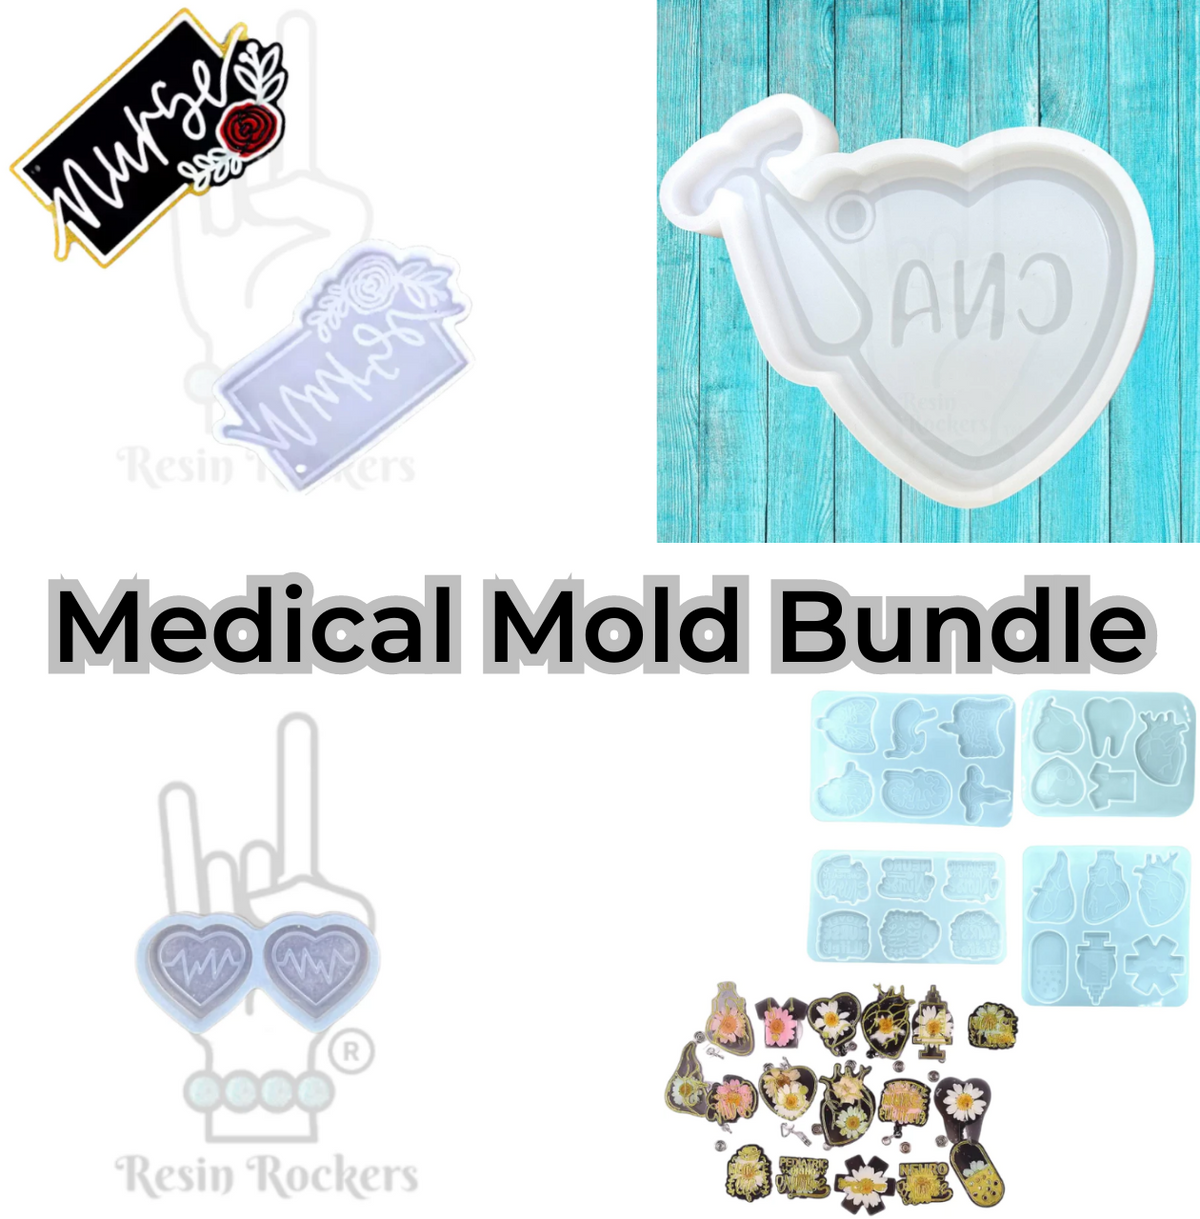 Medical Mold Bundle